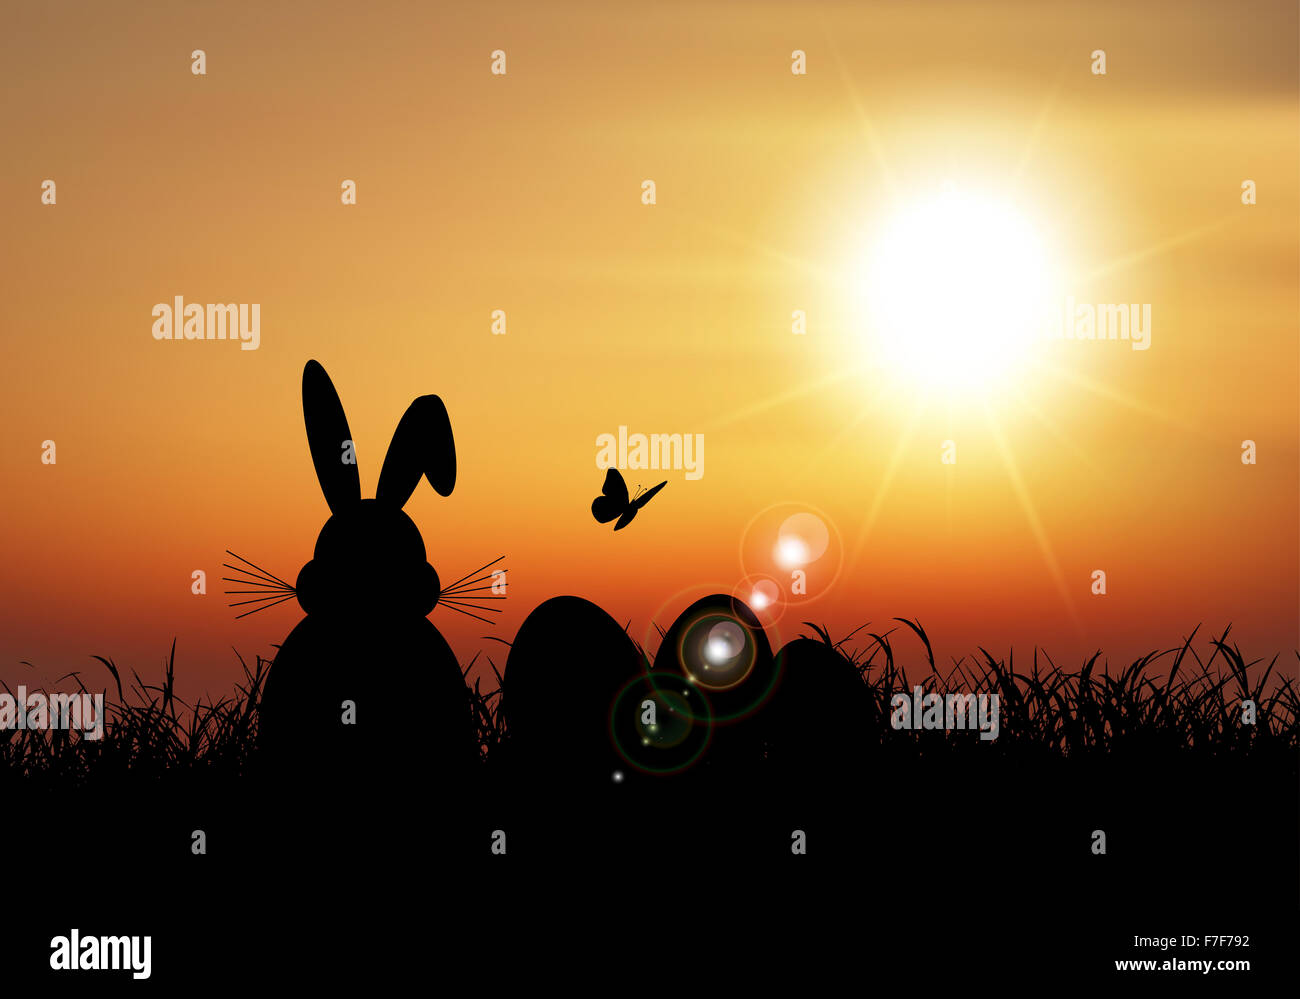 Silhouette de la lapin de Pâques assis dans l'herbe contre un ciel de coucher du soleil Banque D'Images